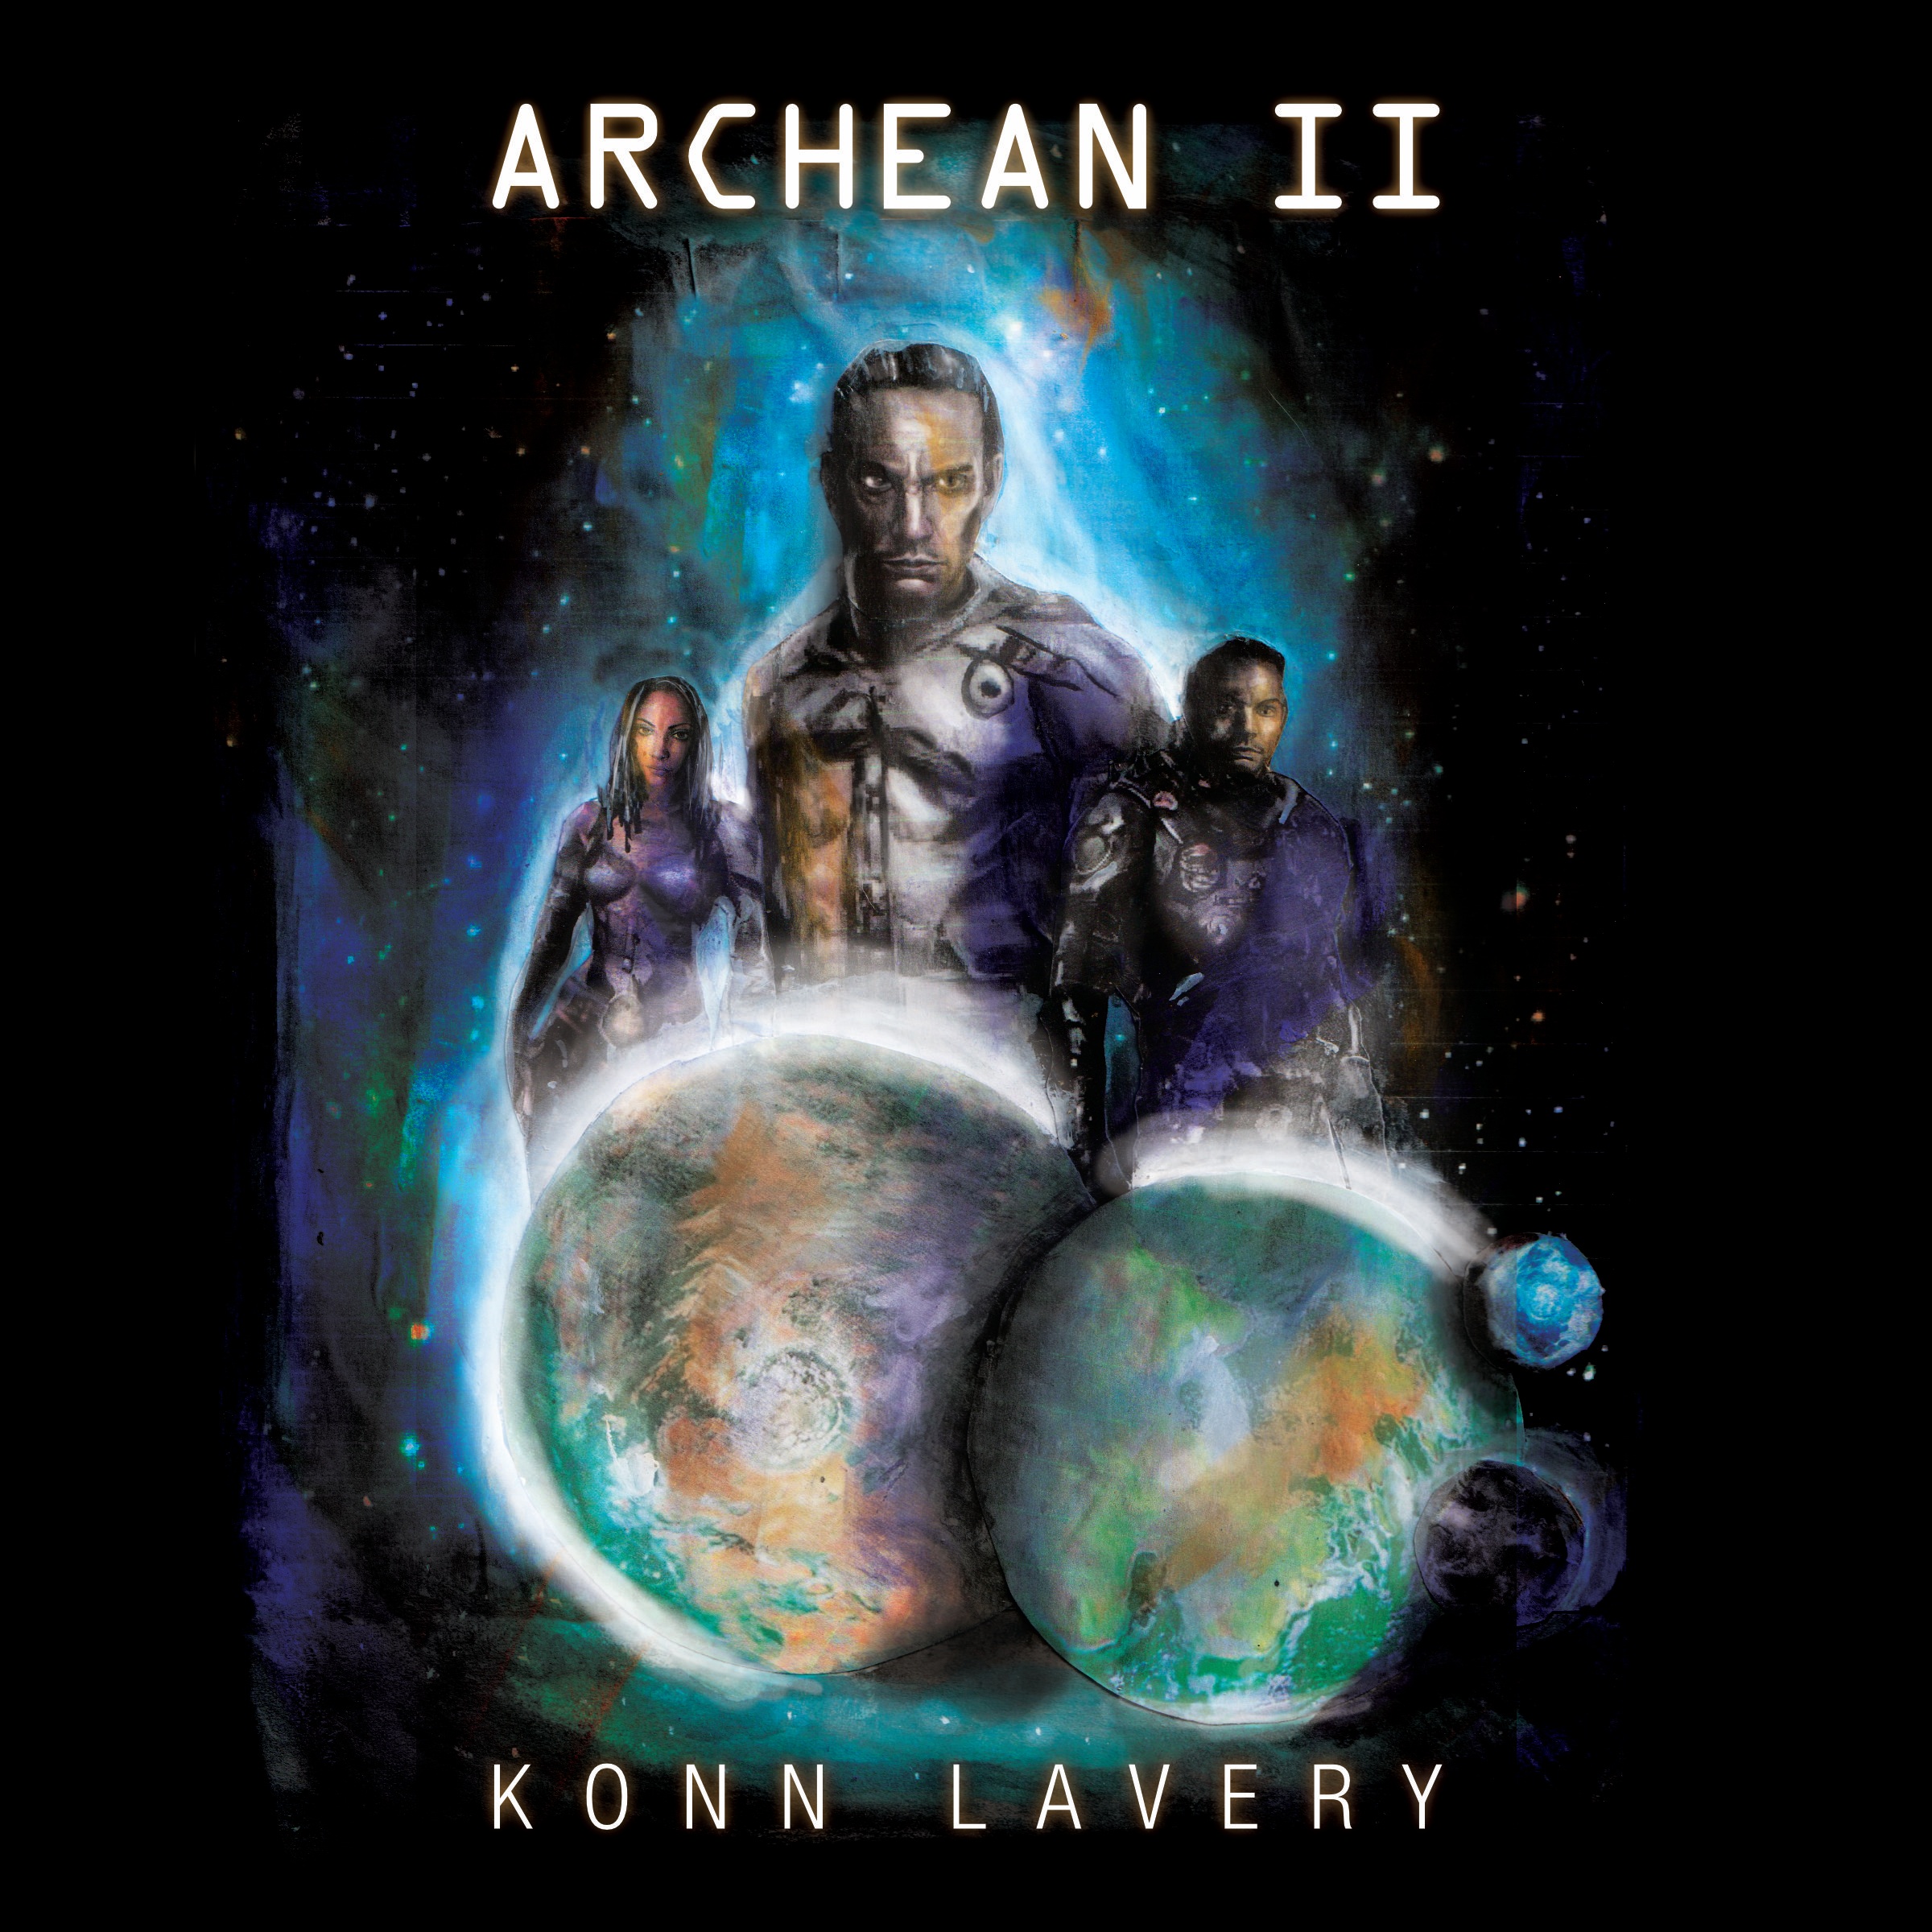 Archean II by Konn Lavery